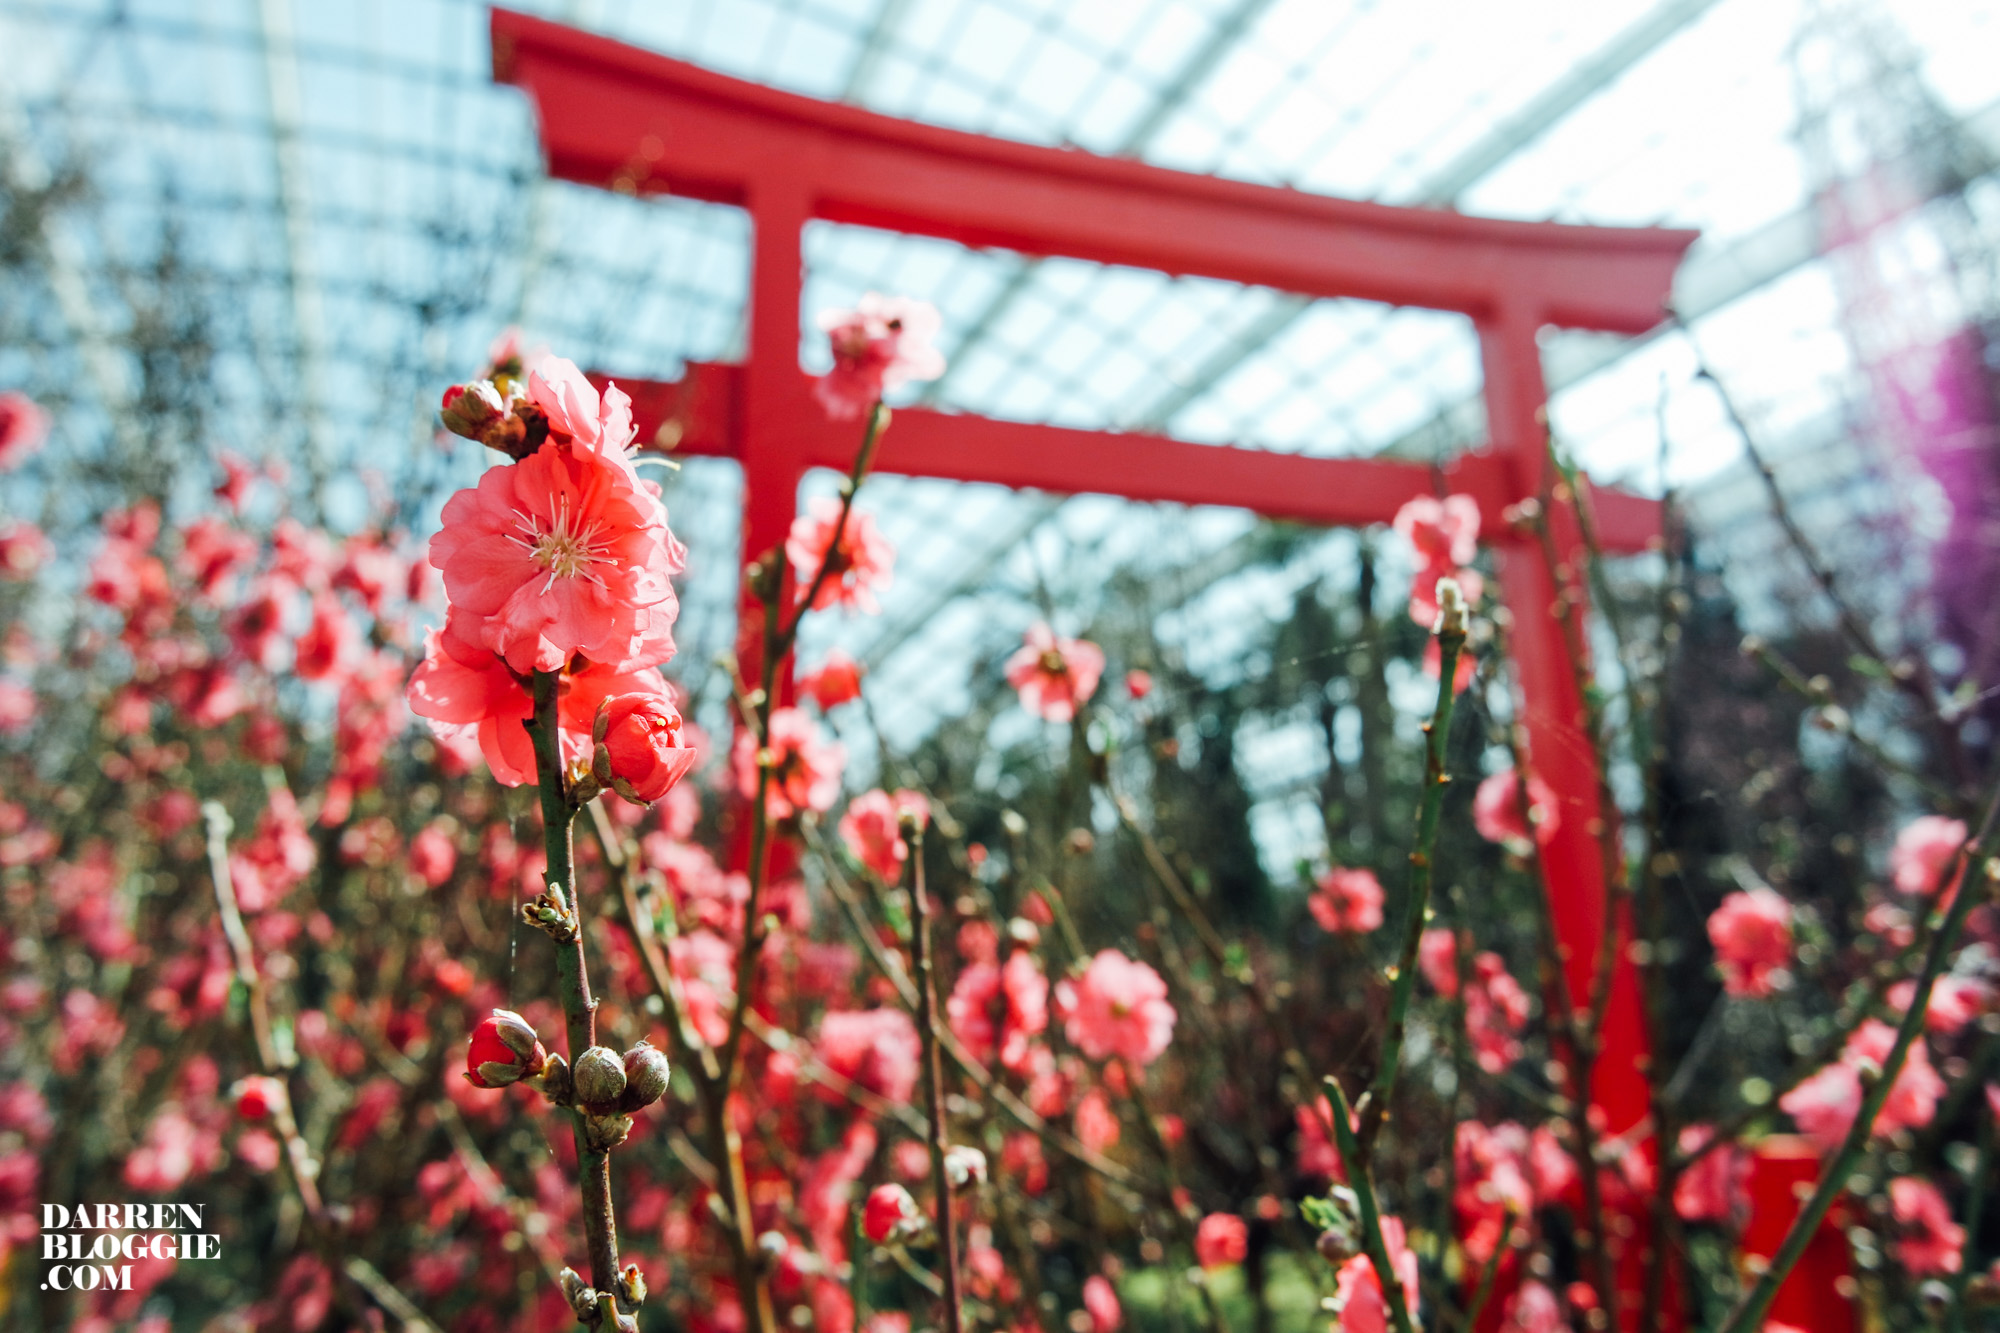 blossom-beats-sakura-cherry-gardensbythebay-2